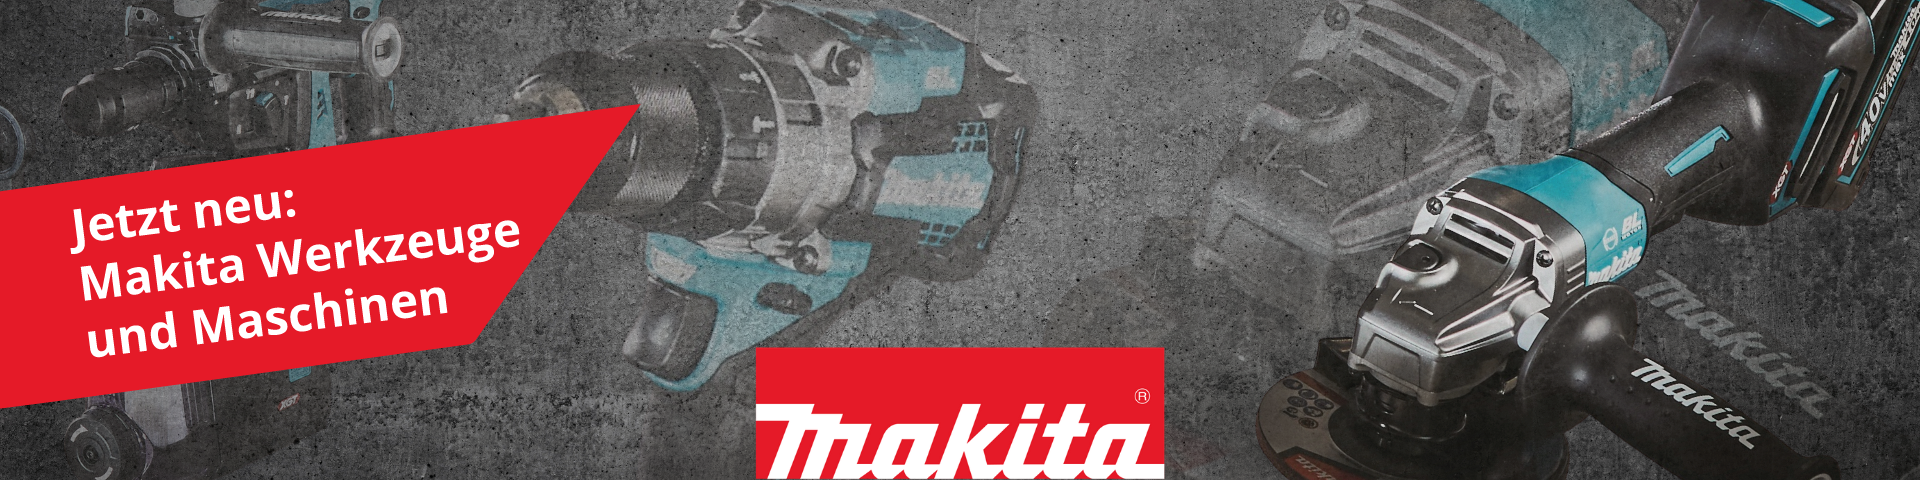 Jetzt neu: Makita Werkzeuge und Maschinen online kaufen